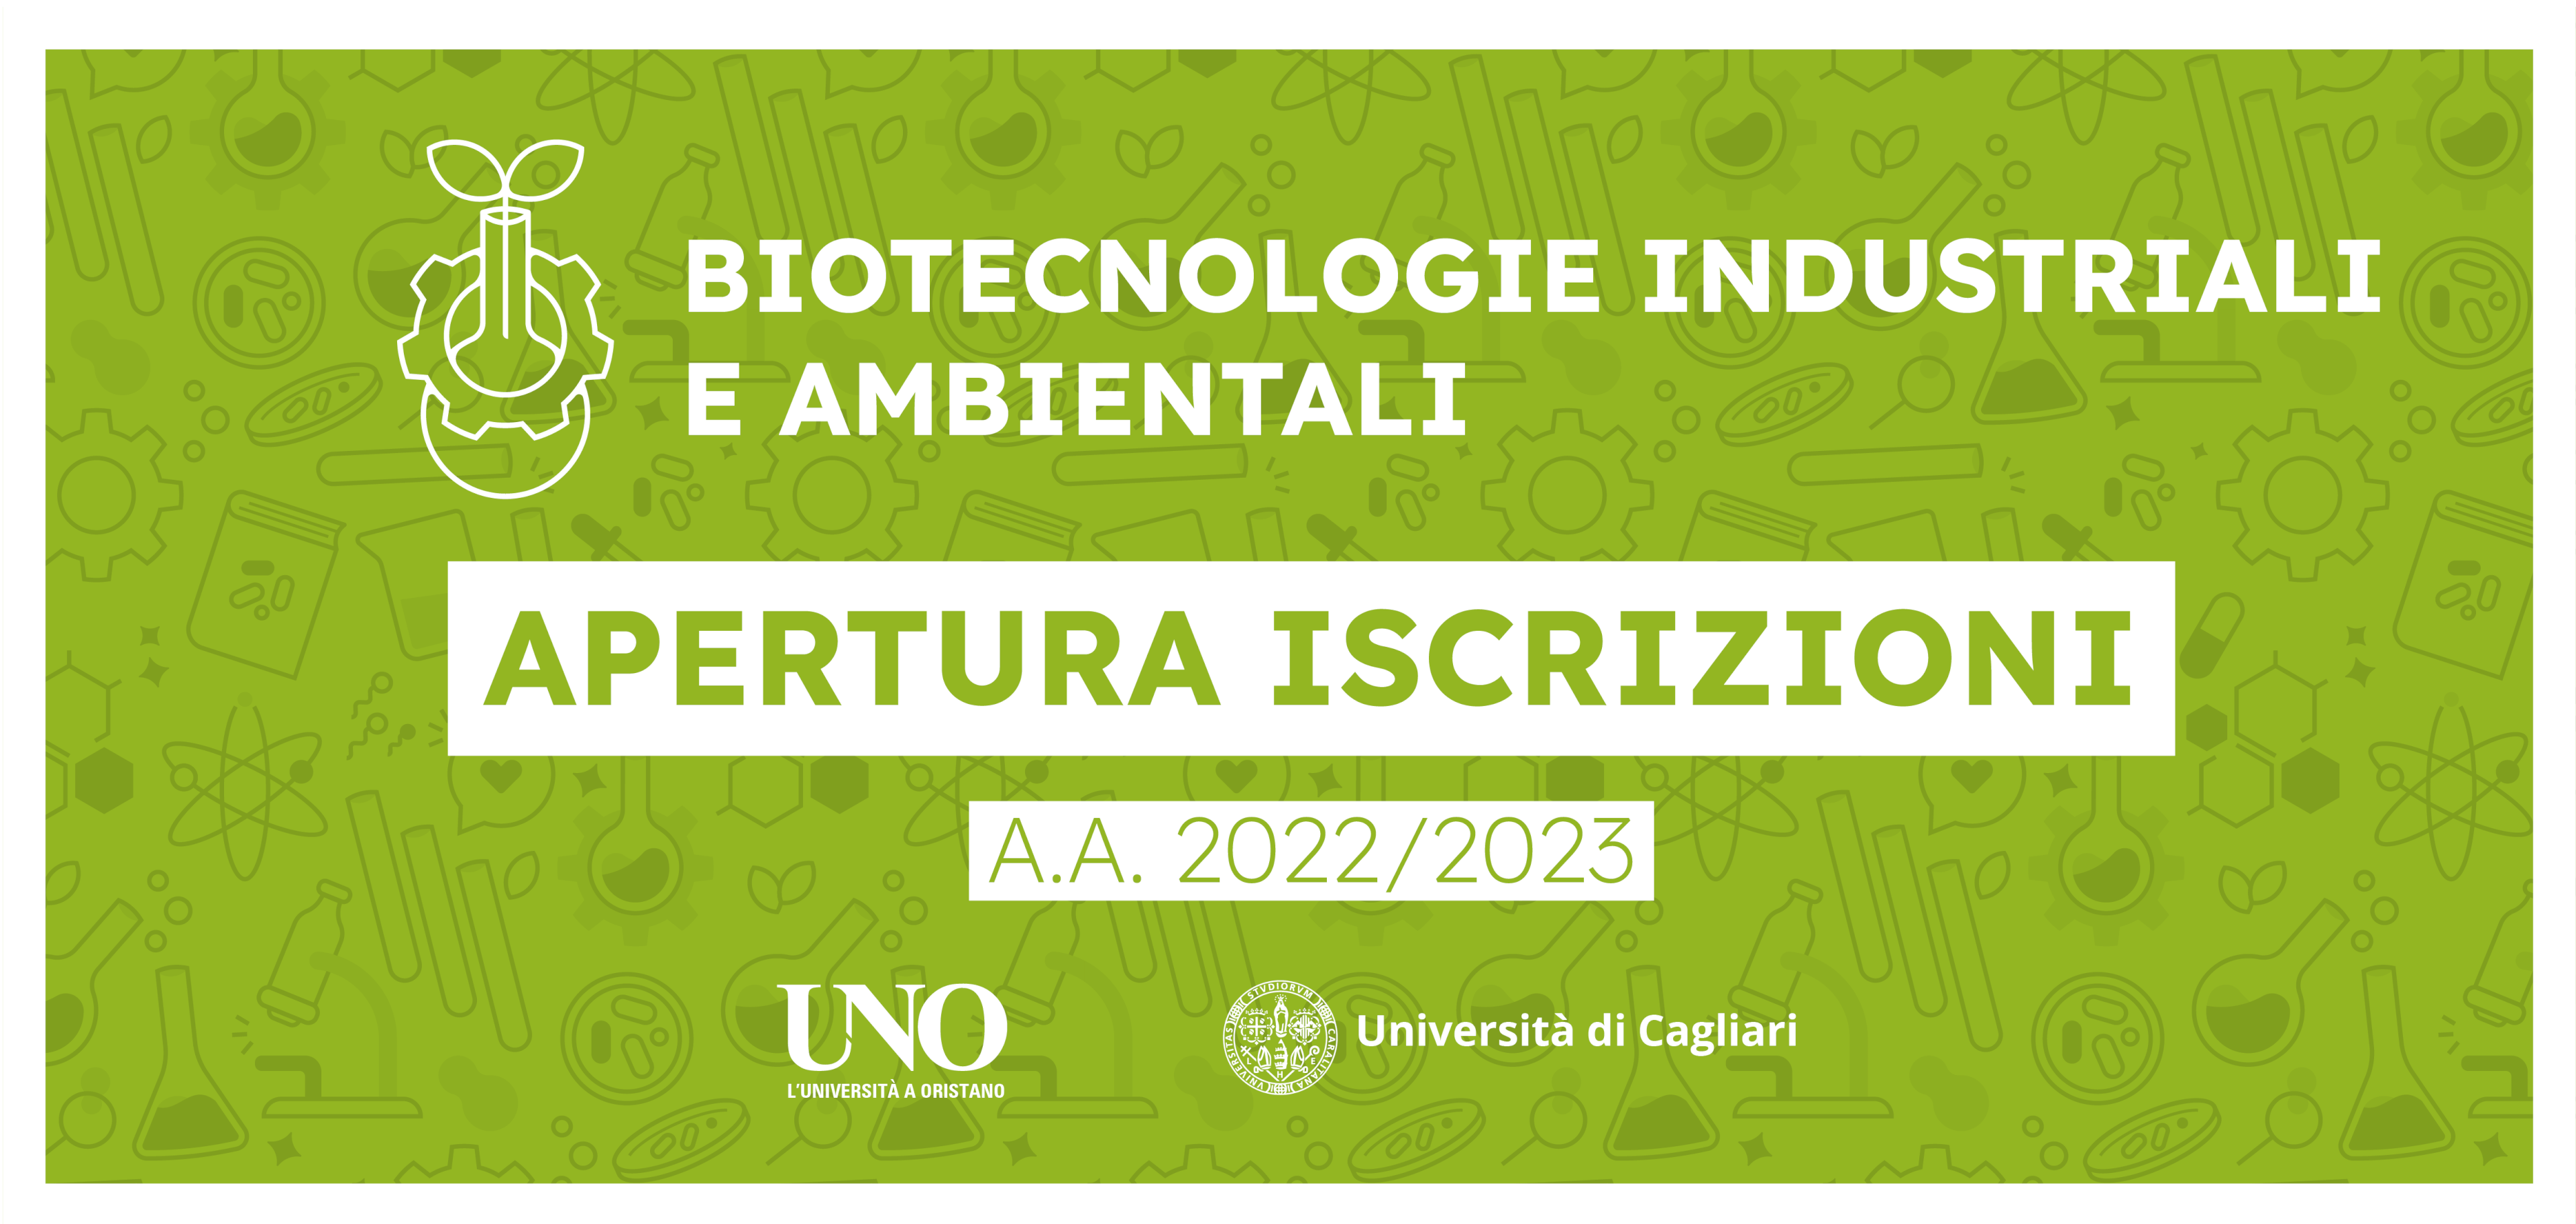 Pubblicato il bando per l’ammissione al corso di laurea in Biotecnologie Industriali ed Ambientali per l’A.A. 2022/2023